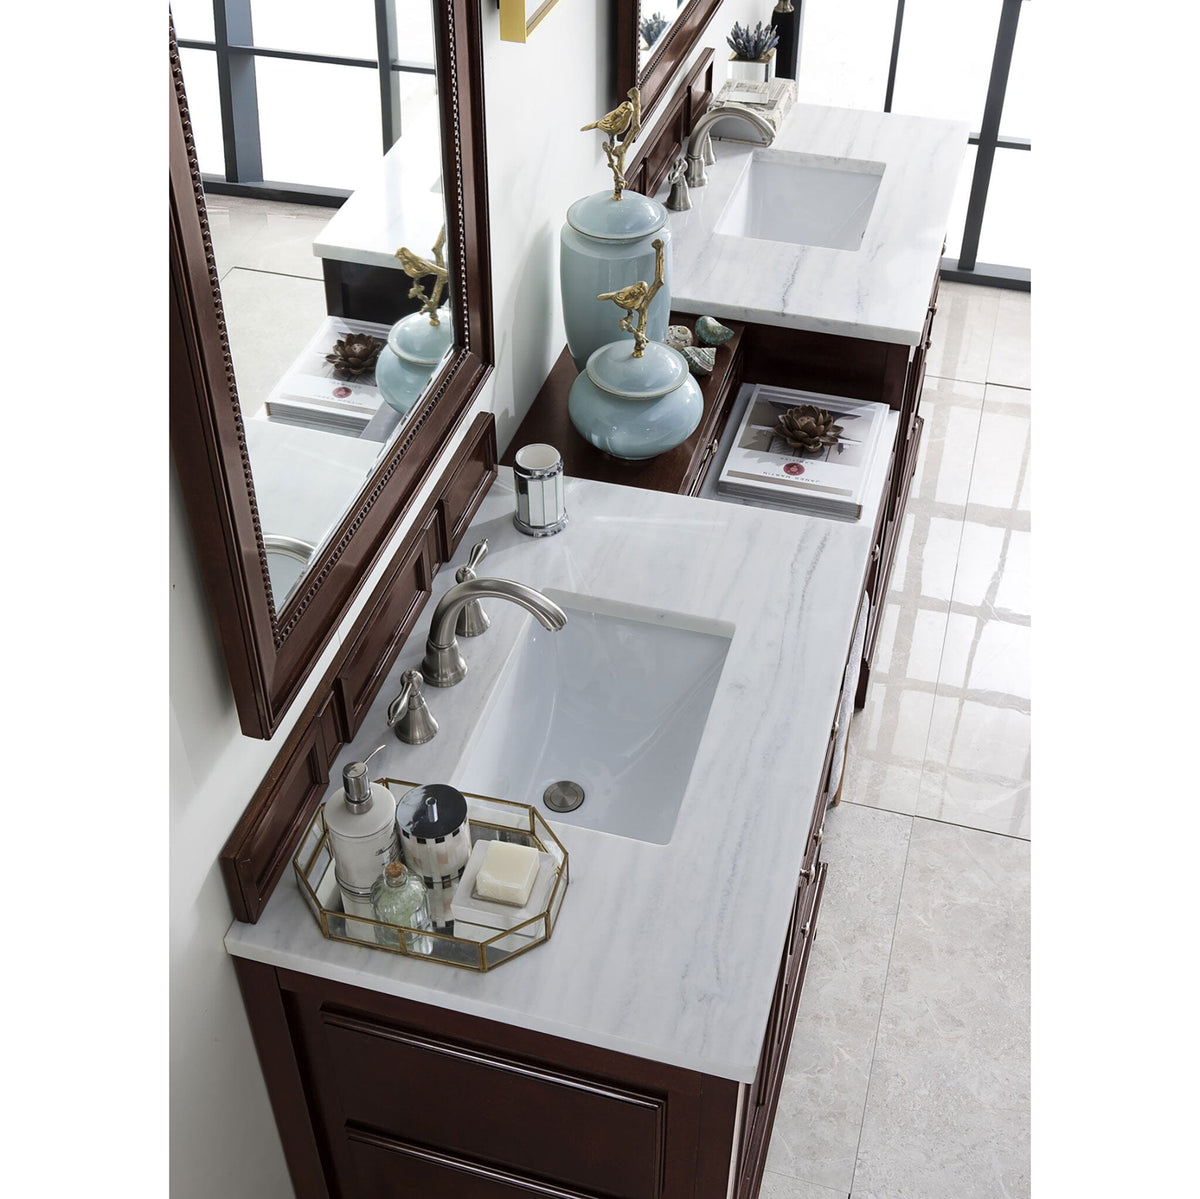 94" De Soto Double Bathroom Vanity with Makeup Counter, Burnished Mahogany - vanitiesdepot.com